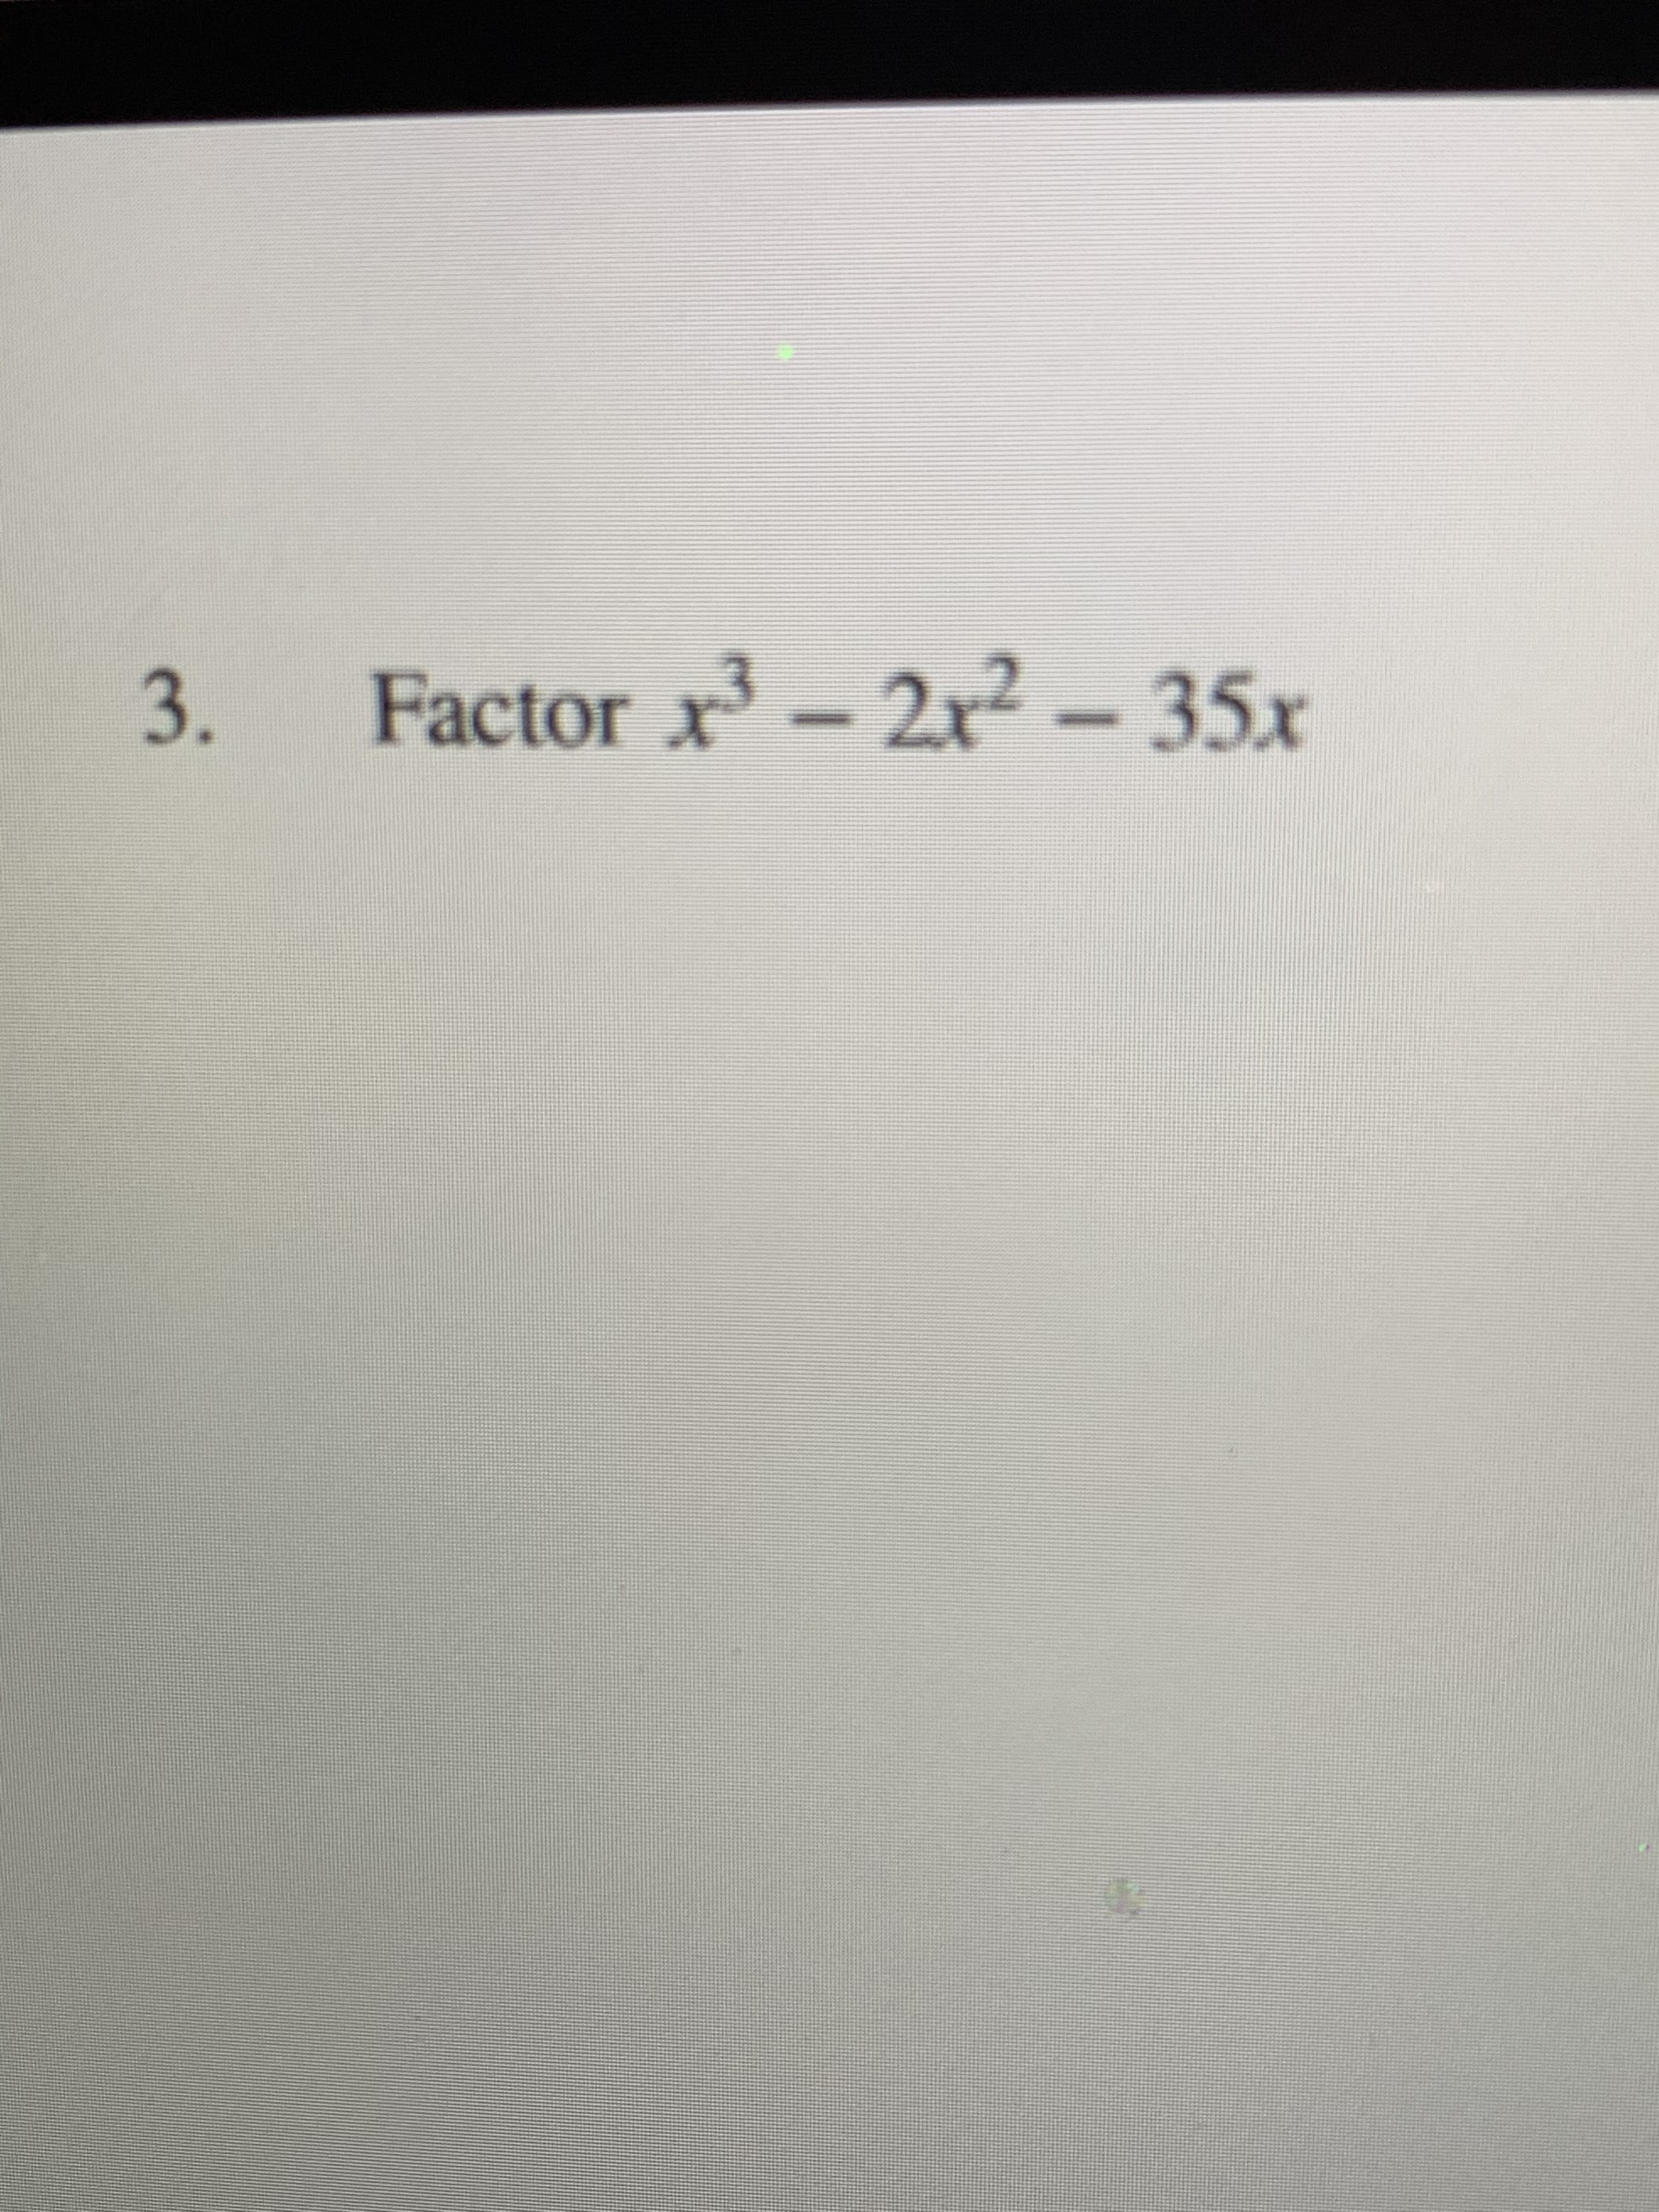 3.
Factor x³
-2x2 - 35x
